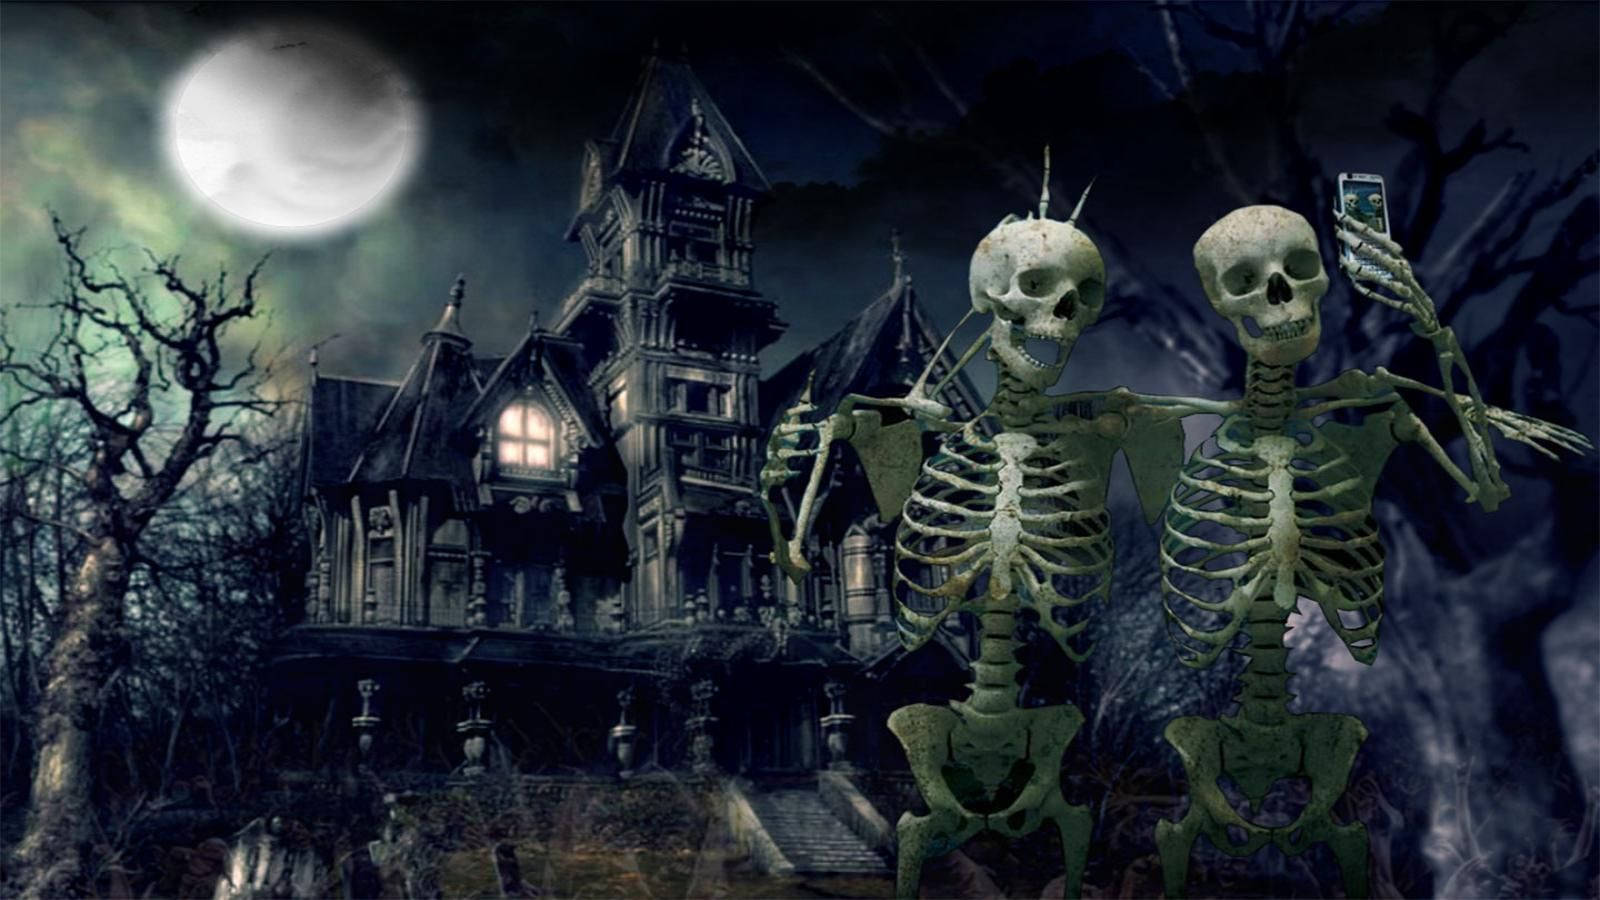 Scary Halloween Skeletons Taking Selfie